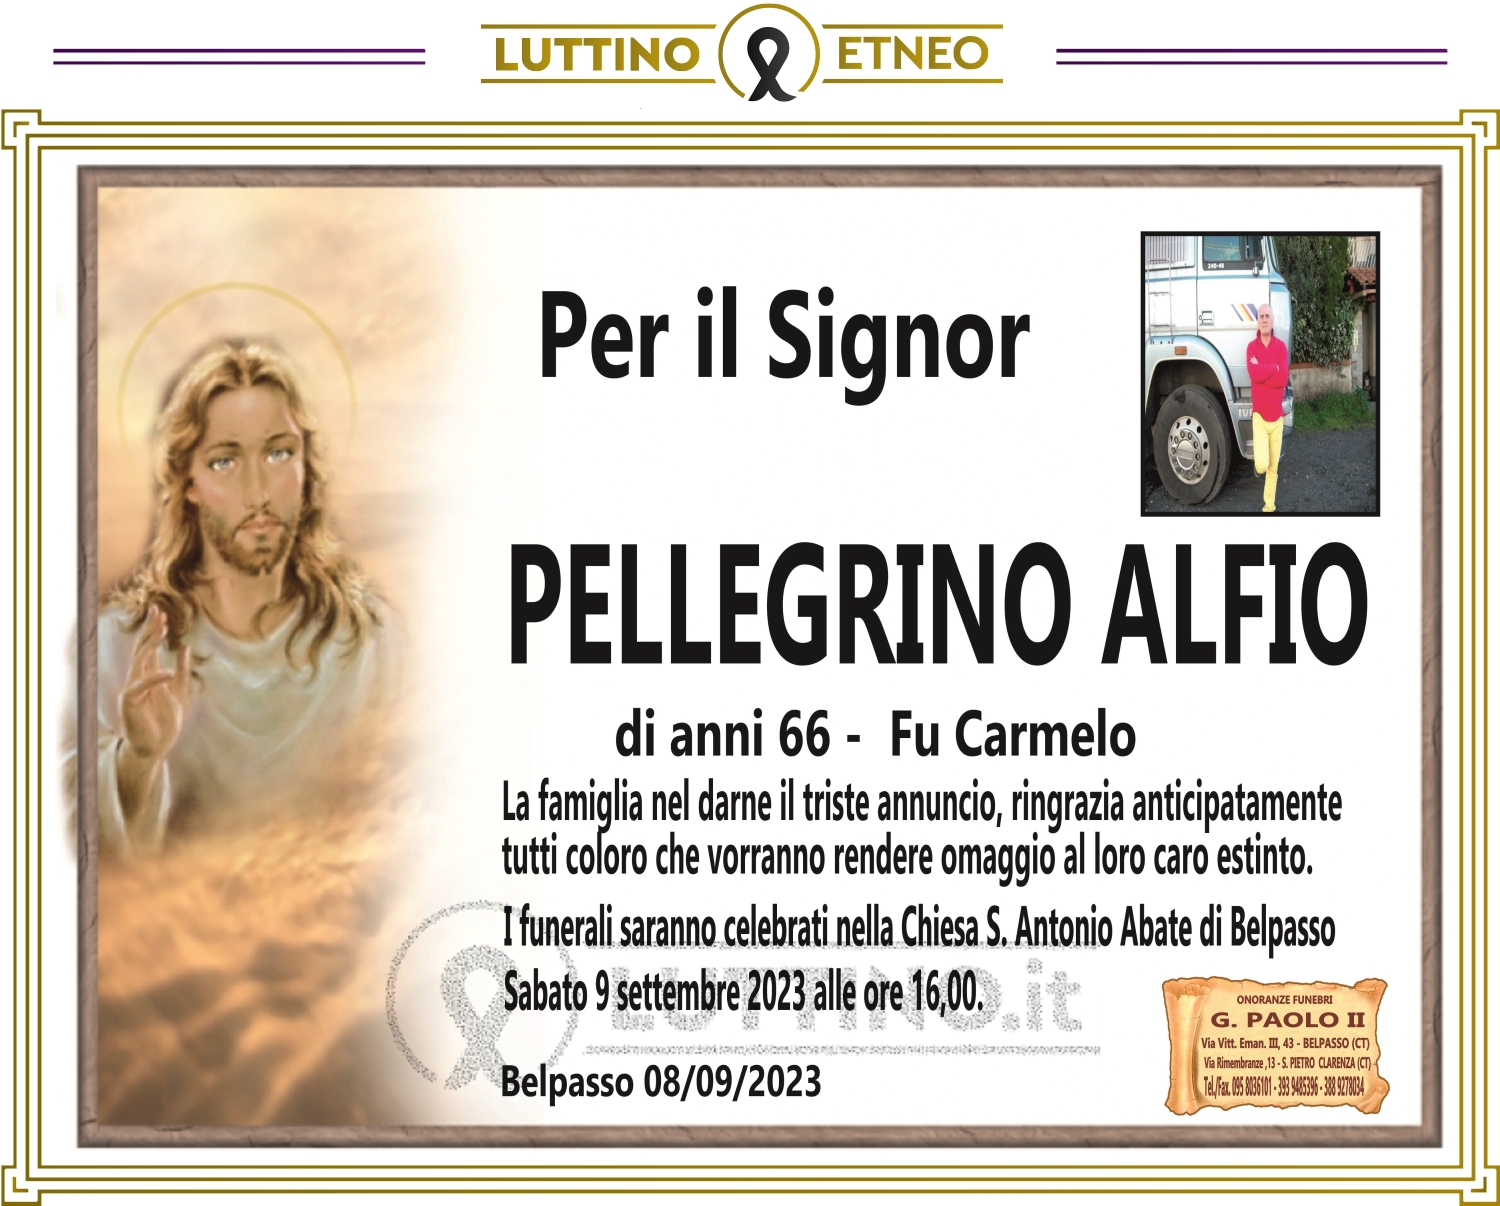 Alfio Pellegrino